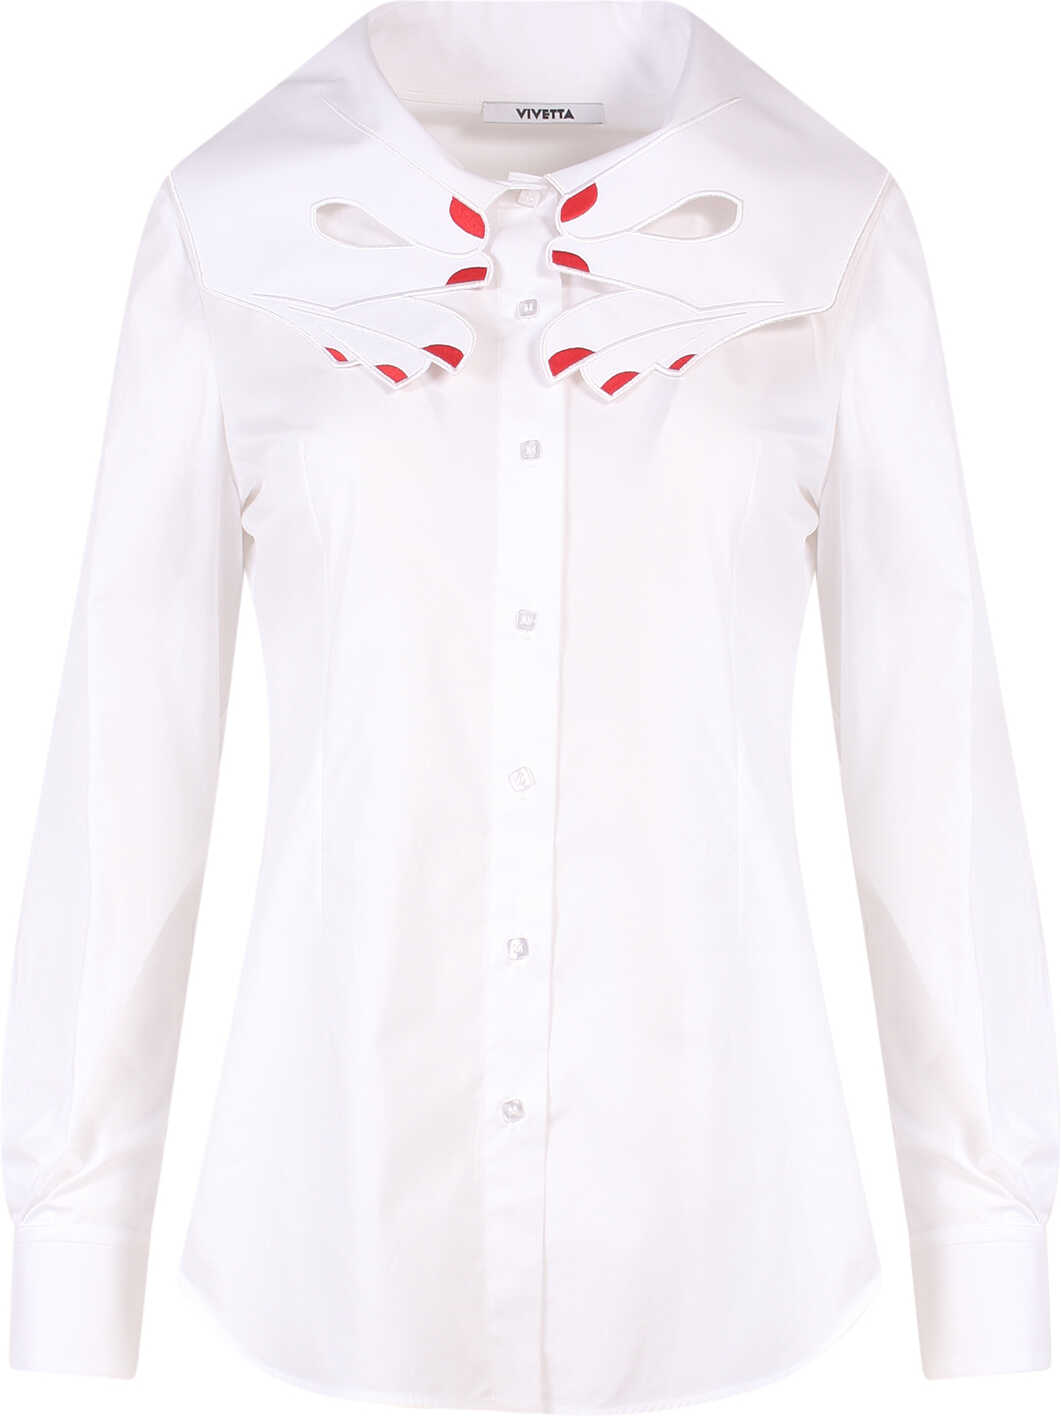 Vivetta Shirt White